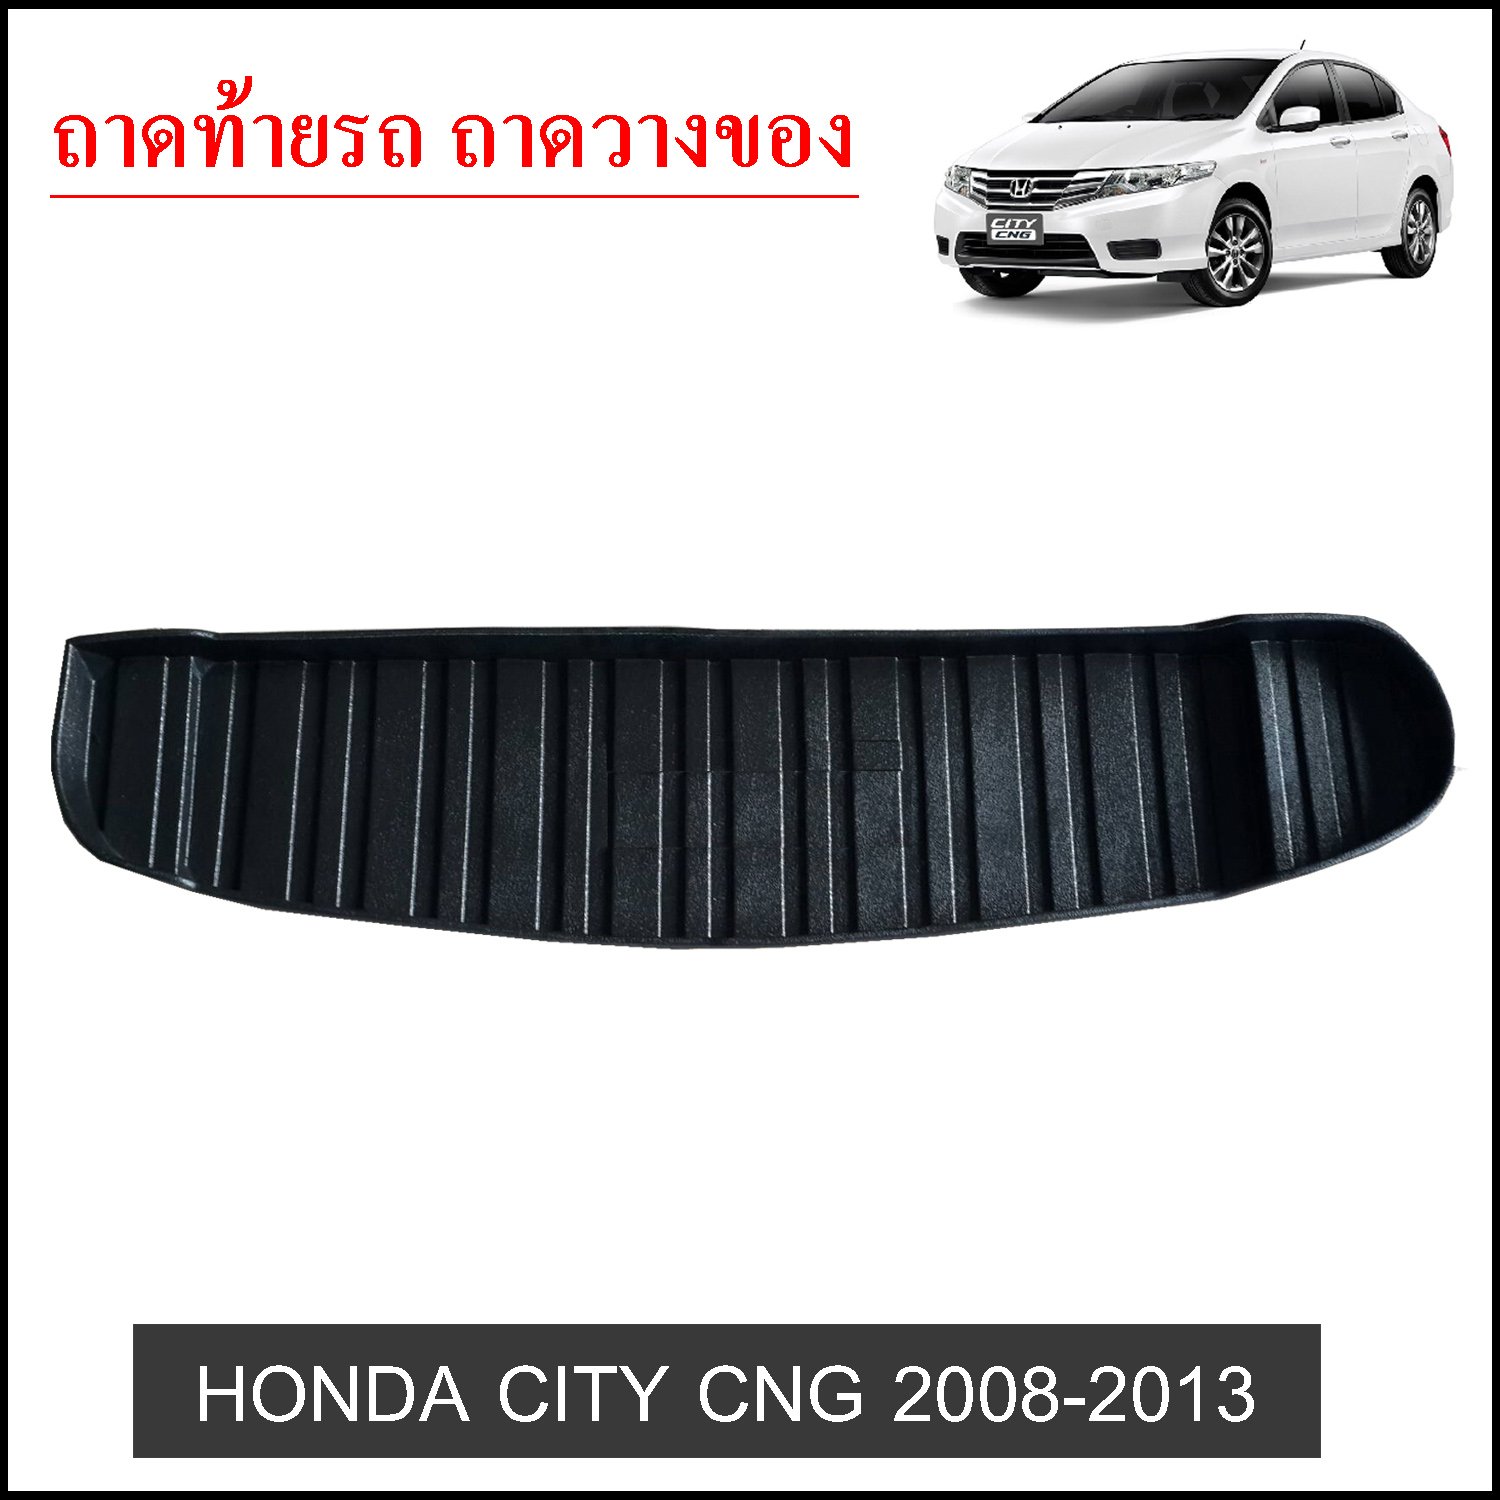 ถาดท้ายวางของ Honda City 2008-2013 CNG